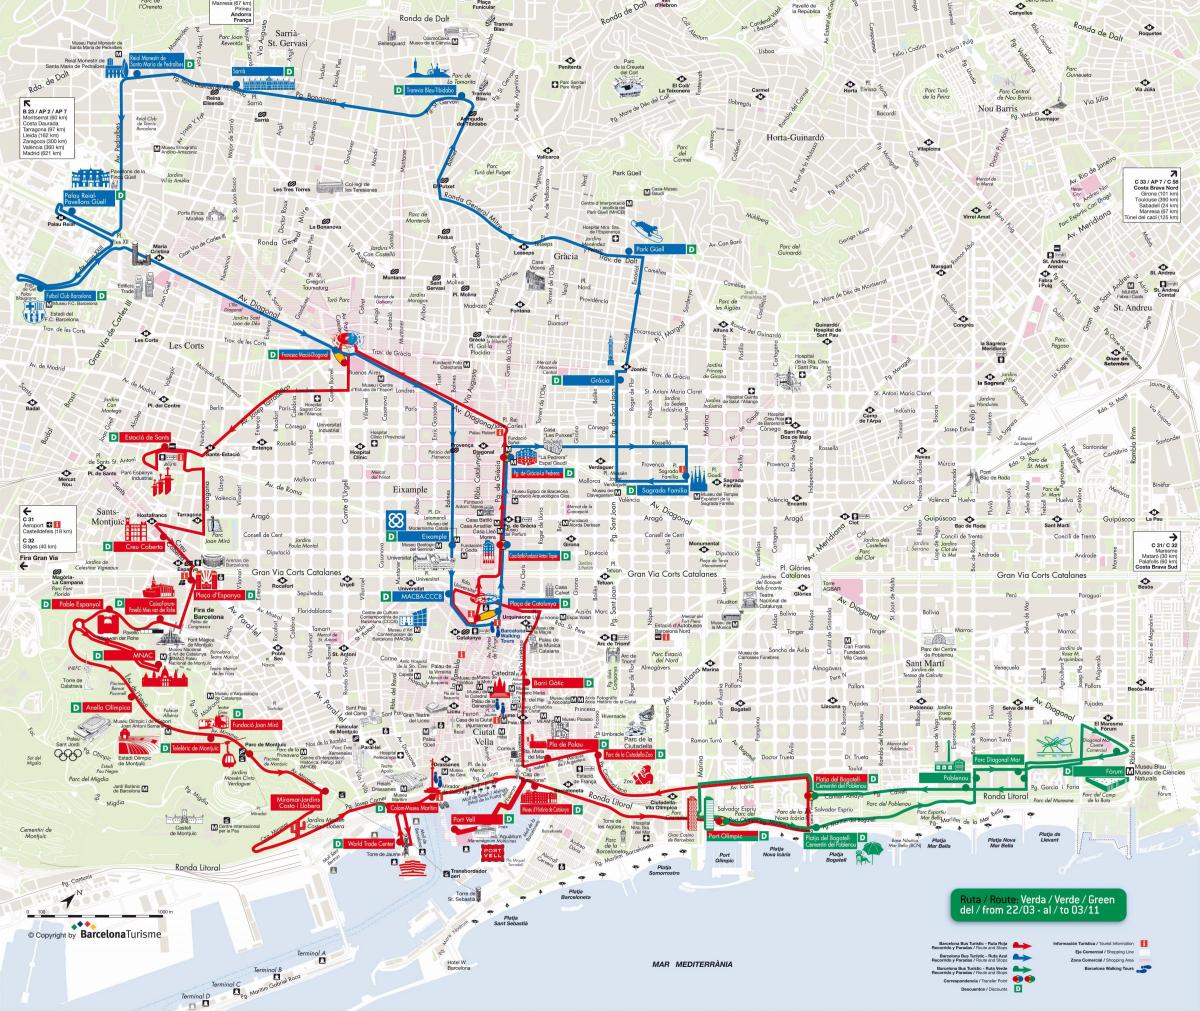 barcelona bus turistic de la línea roja del mapa